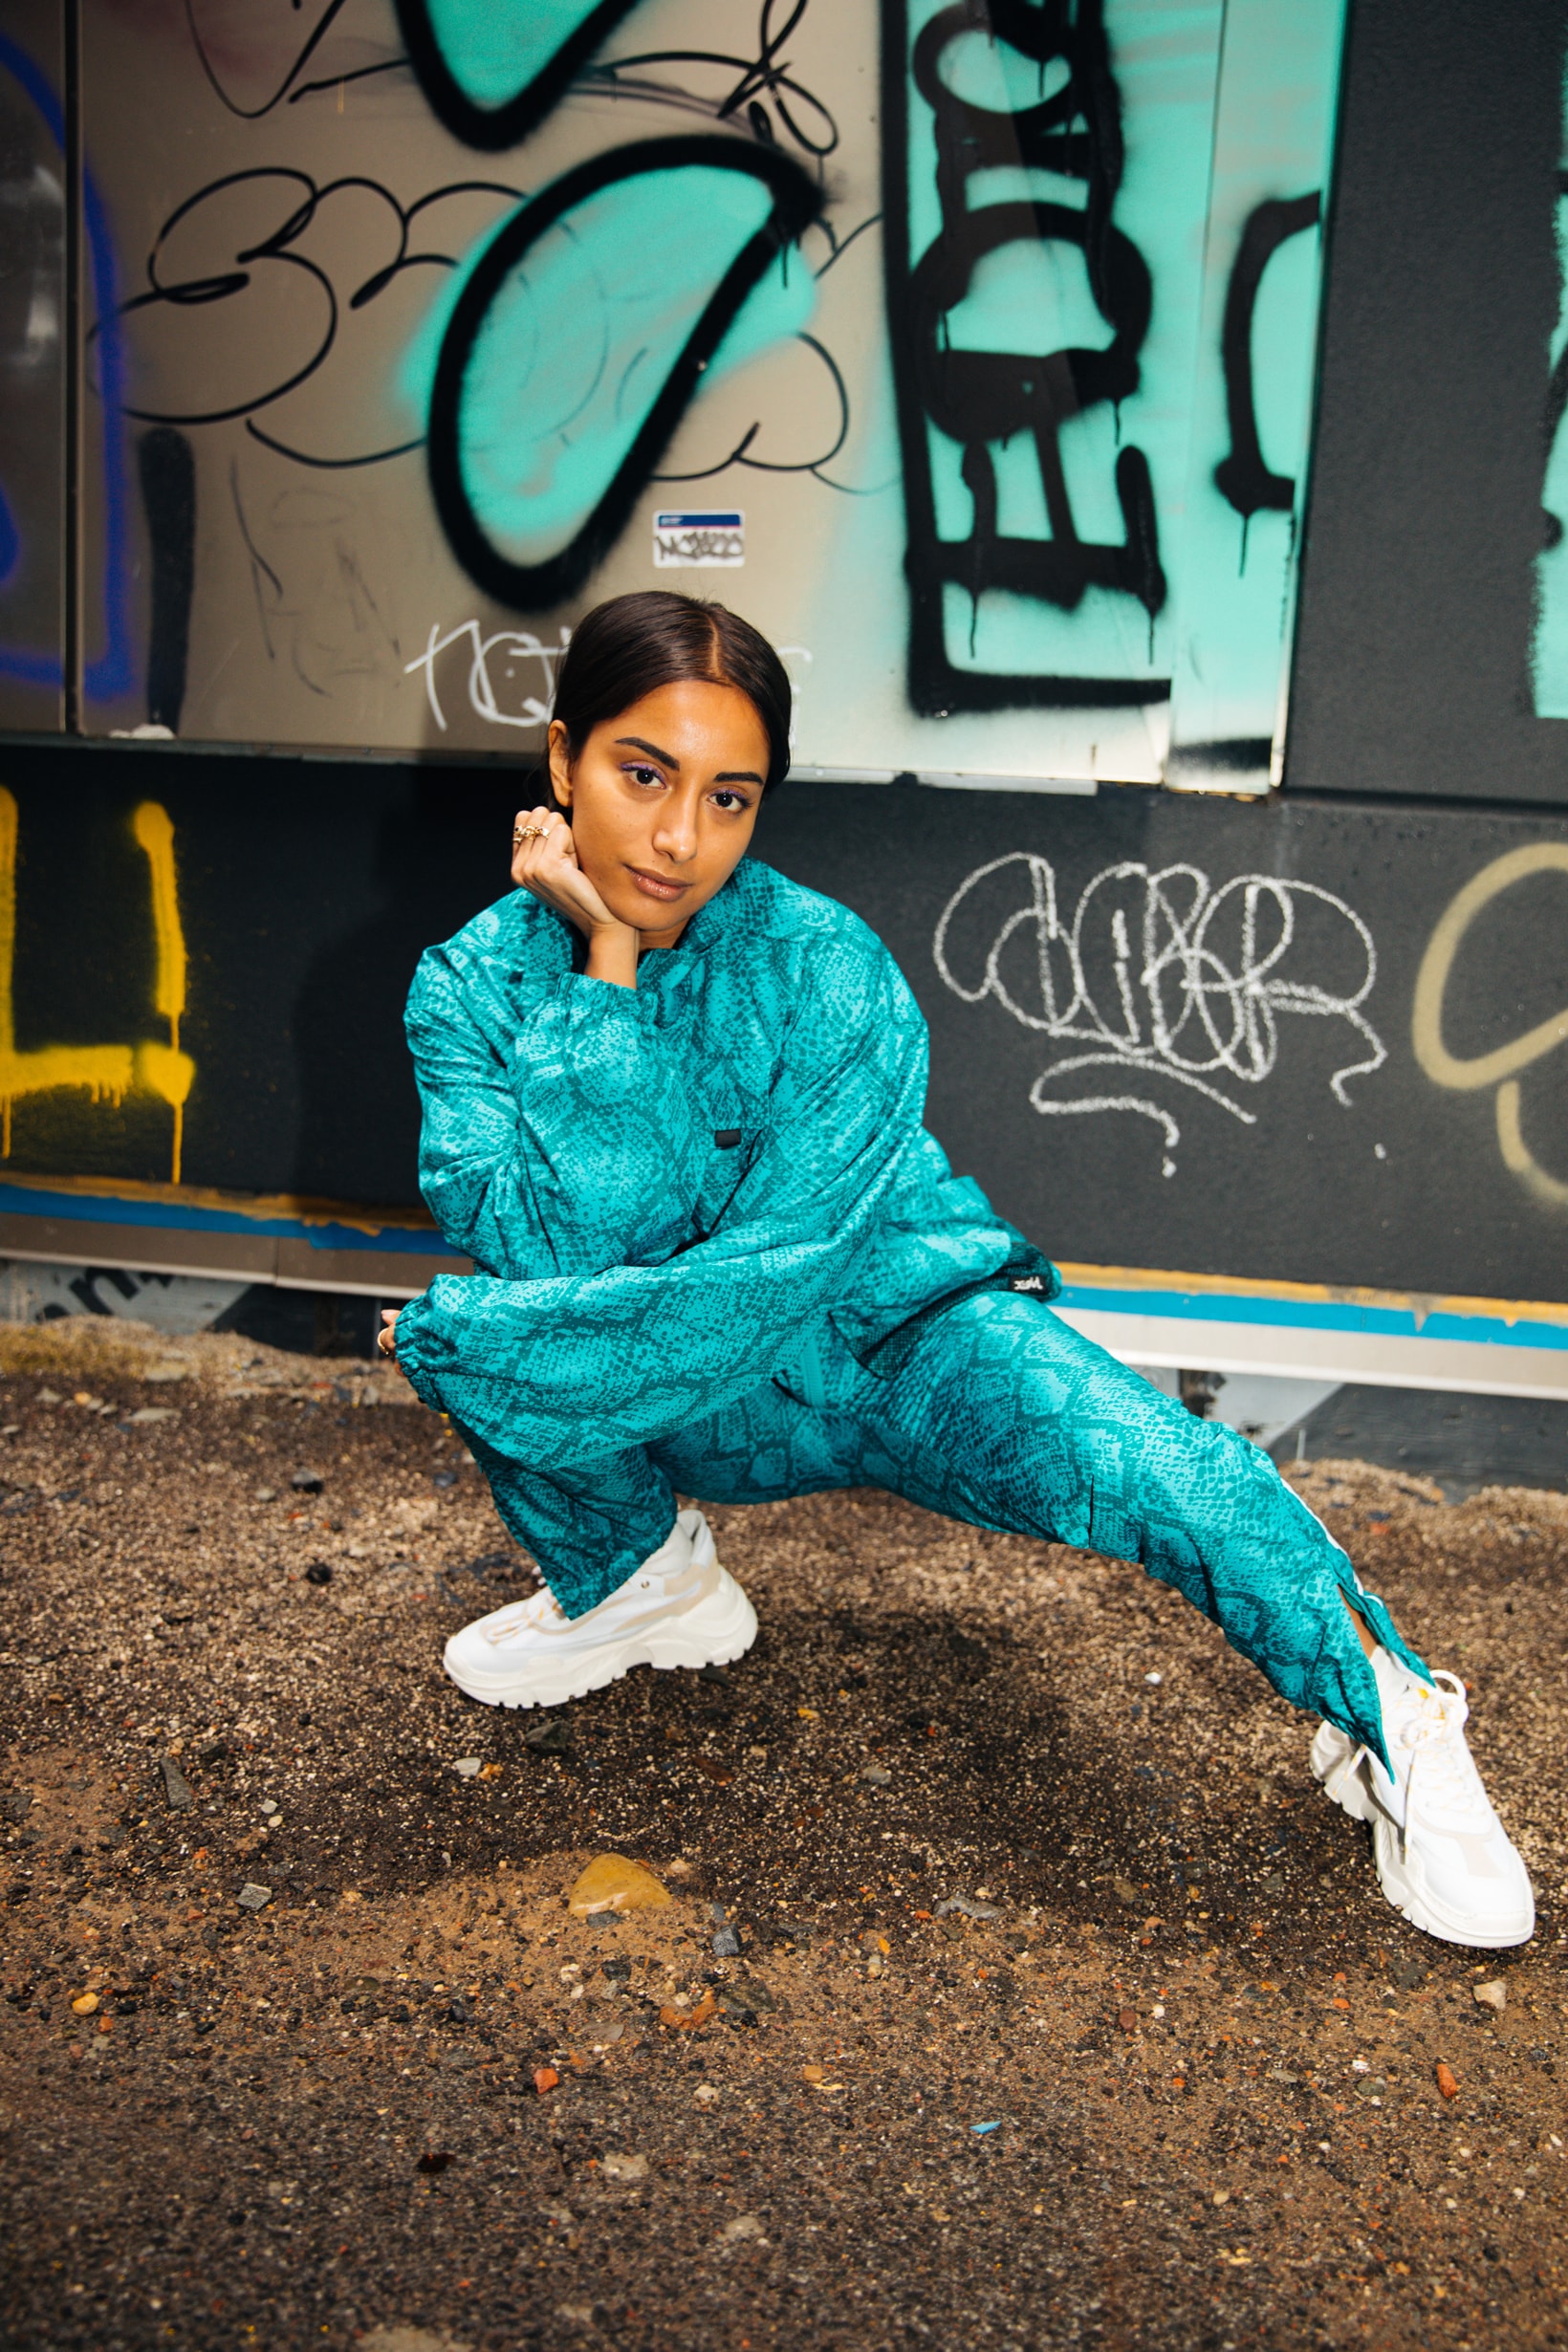 X-Girl Spring Summer 2019 Collection DJ Amrit Jacket Pants Snake Print Teal Black